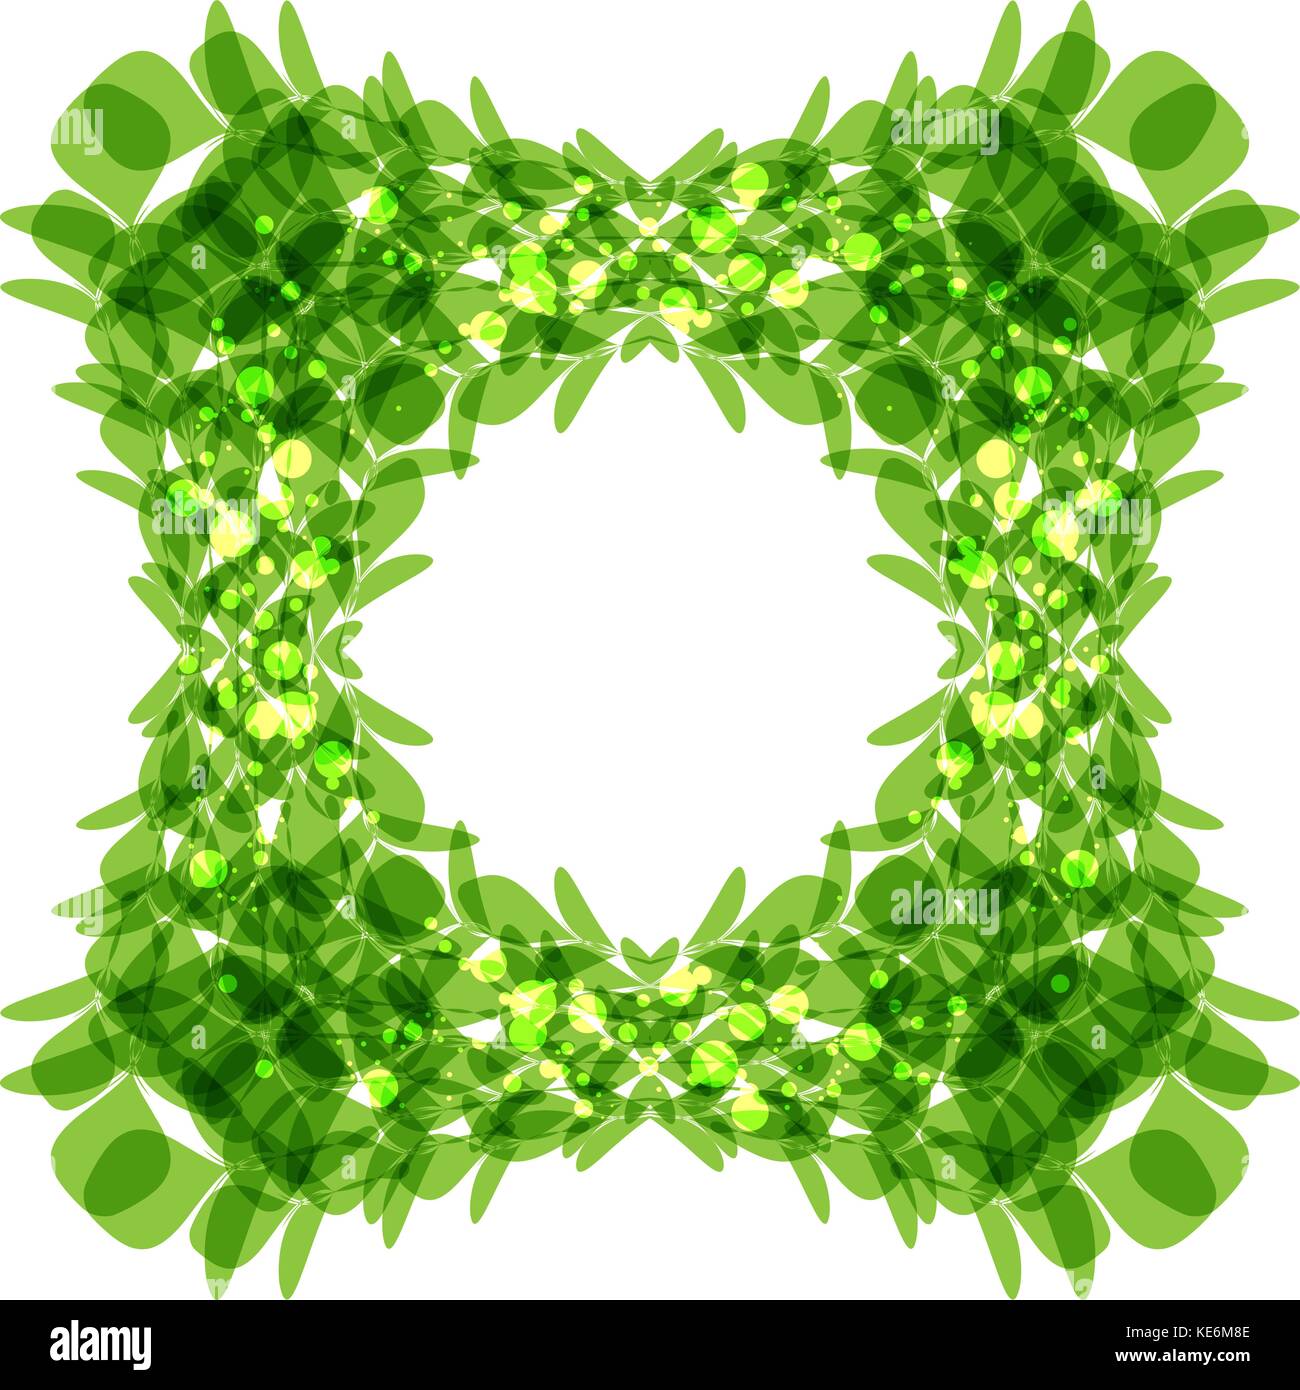 Green leaves frame, square shape, vector illustration Stock Vector